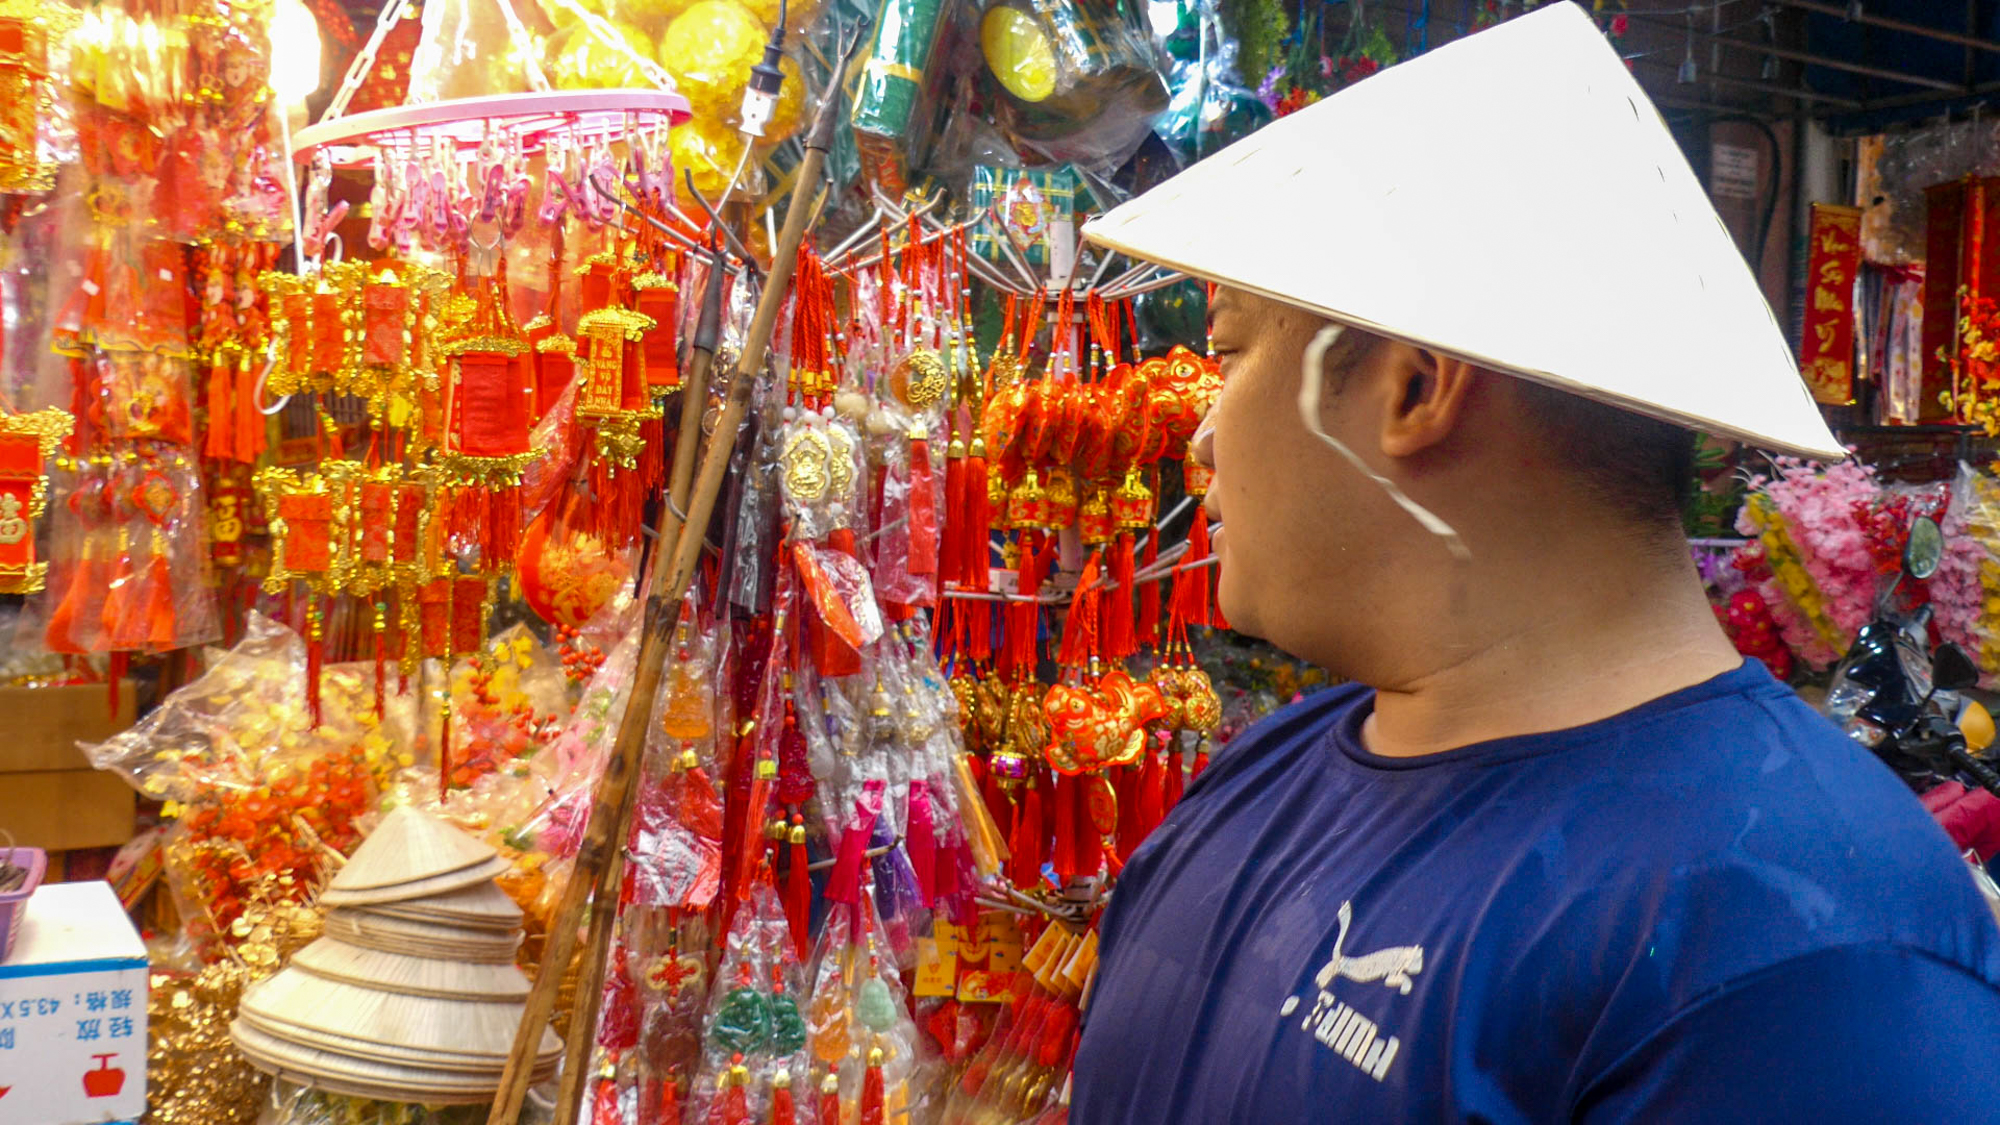 Độc đáo hình ảnh con thỏ trong chợ Tết người Hoa ở TP.HCM  - Ảnh 7.